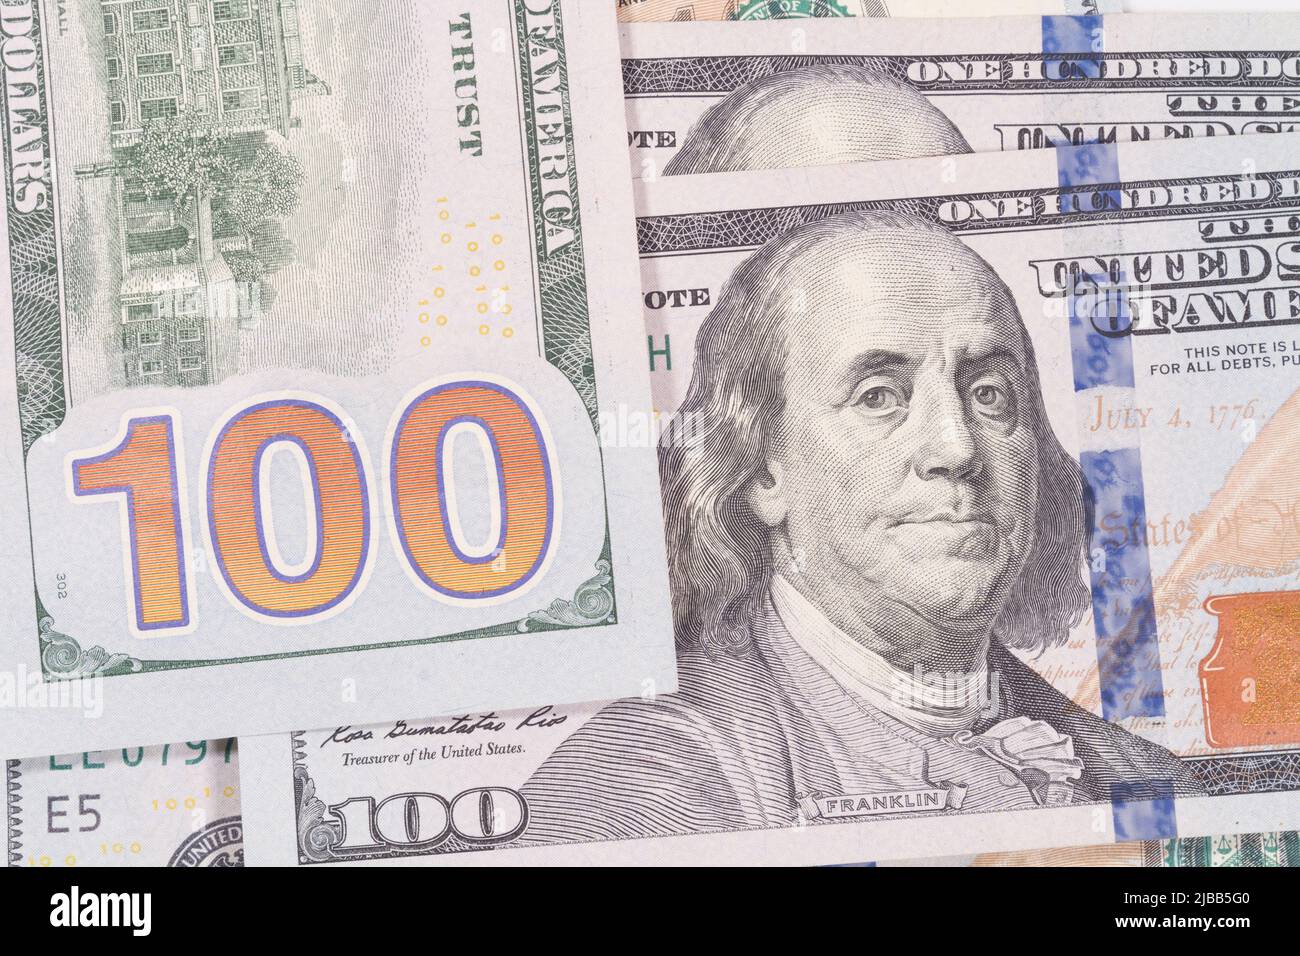 Montage Nahaufnahme des großen 100-Nummern-Designs auf der Rückseite eines USA One Hundred Dollar Bill zusammen mit einer weiteren Notiz, die Benjamin Franklin zeigt. Stockfoto